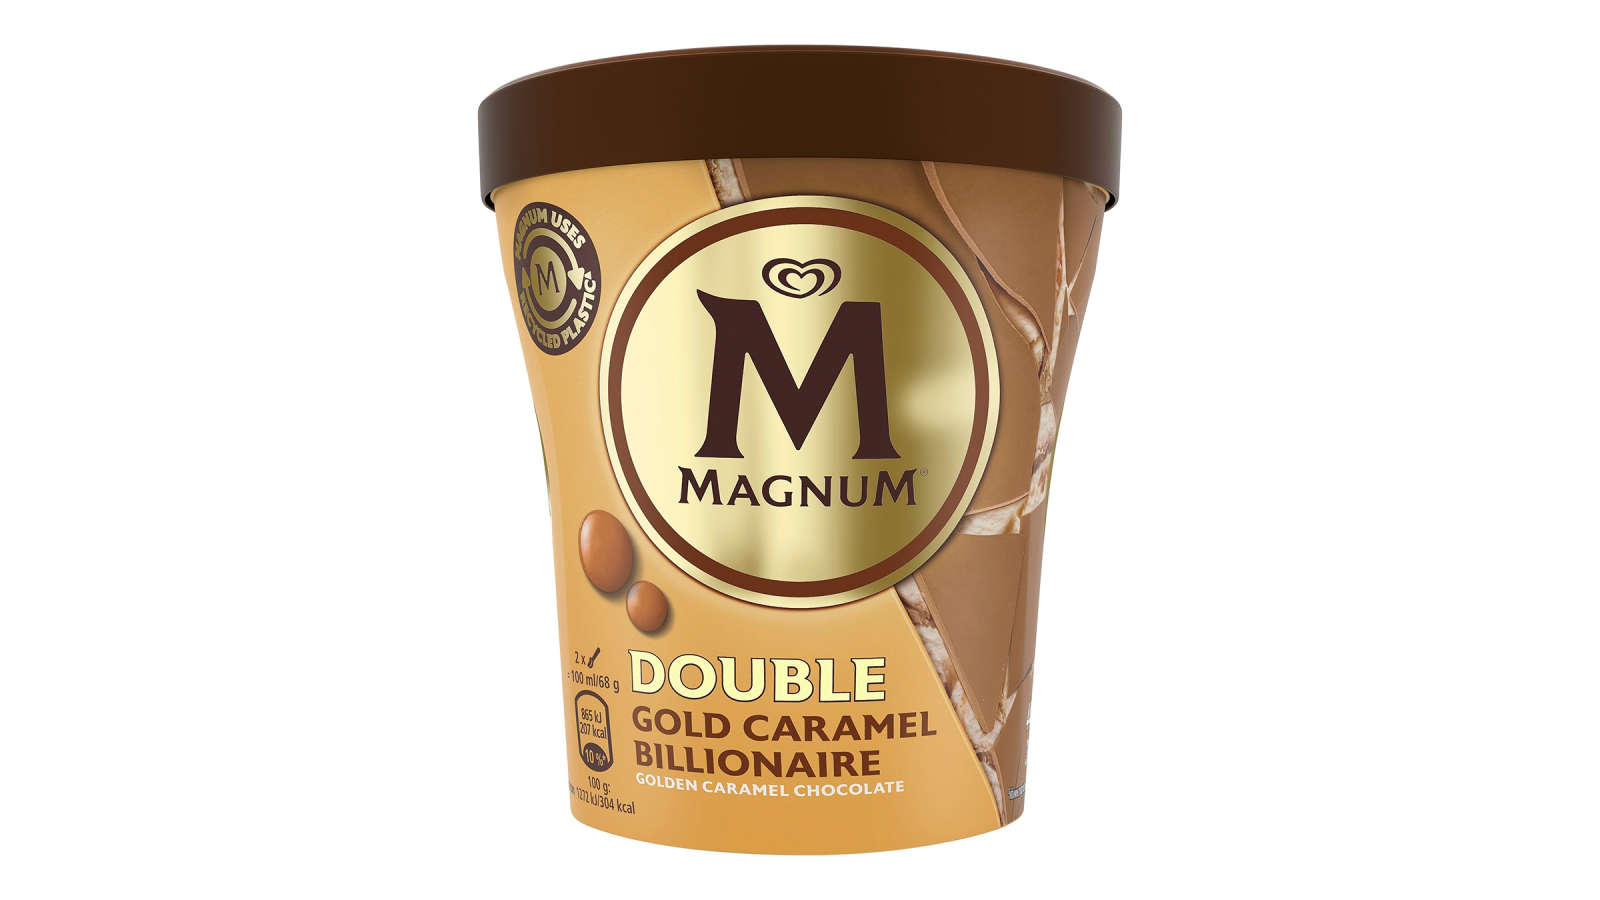 Magnum Double gold caramel billionaire